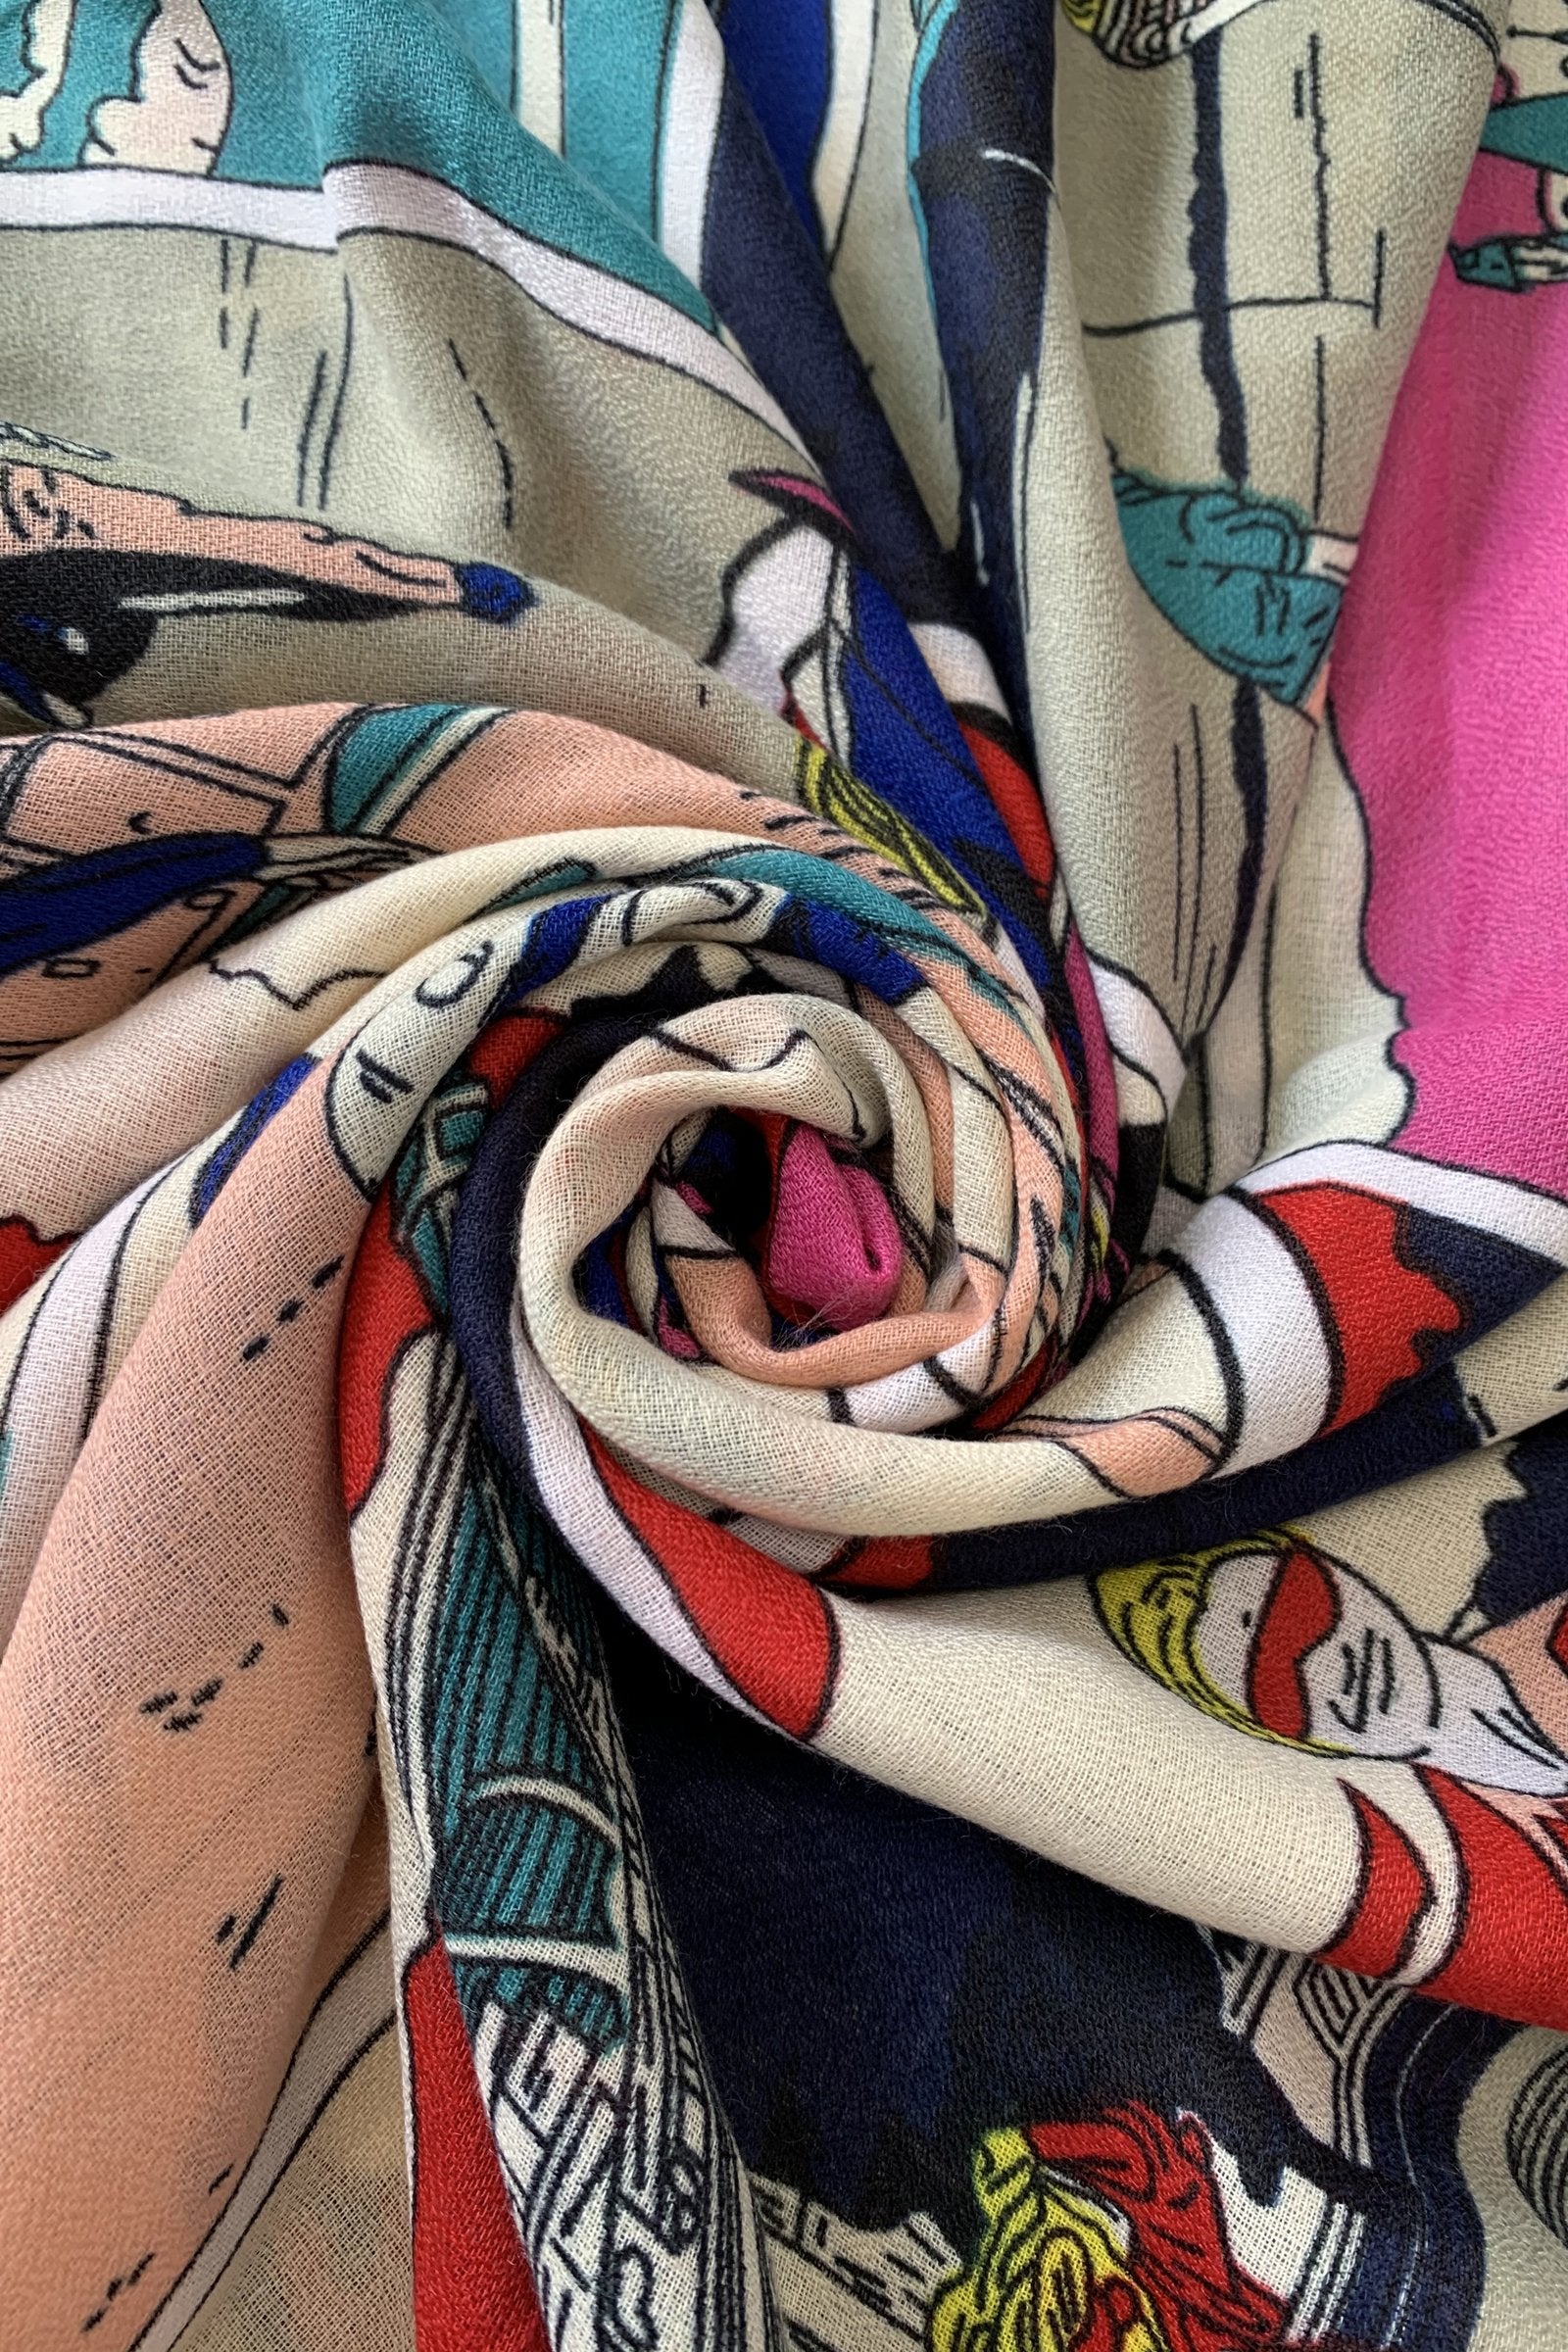 Bavlněná Šála-šátek, 85 cm x 180 cm, Roy Lichtenstein - Pop Art ve stylu 60. let | -80% Akce na Šperky